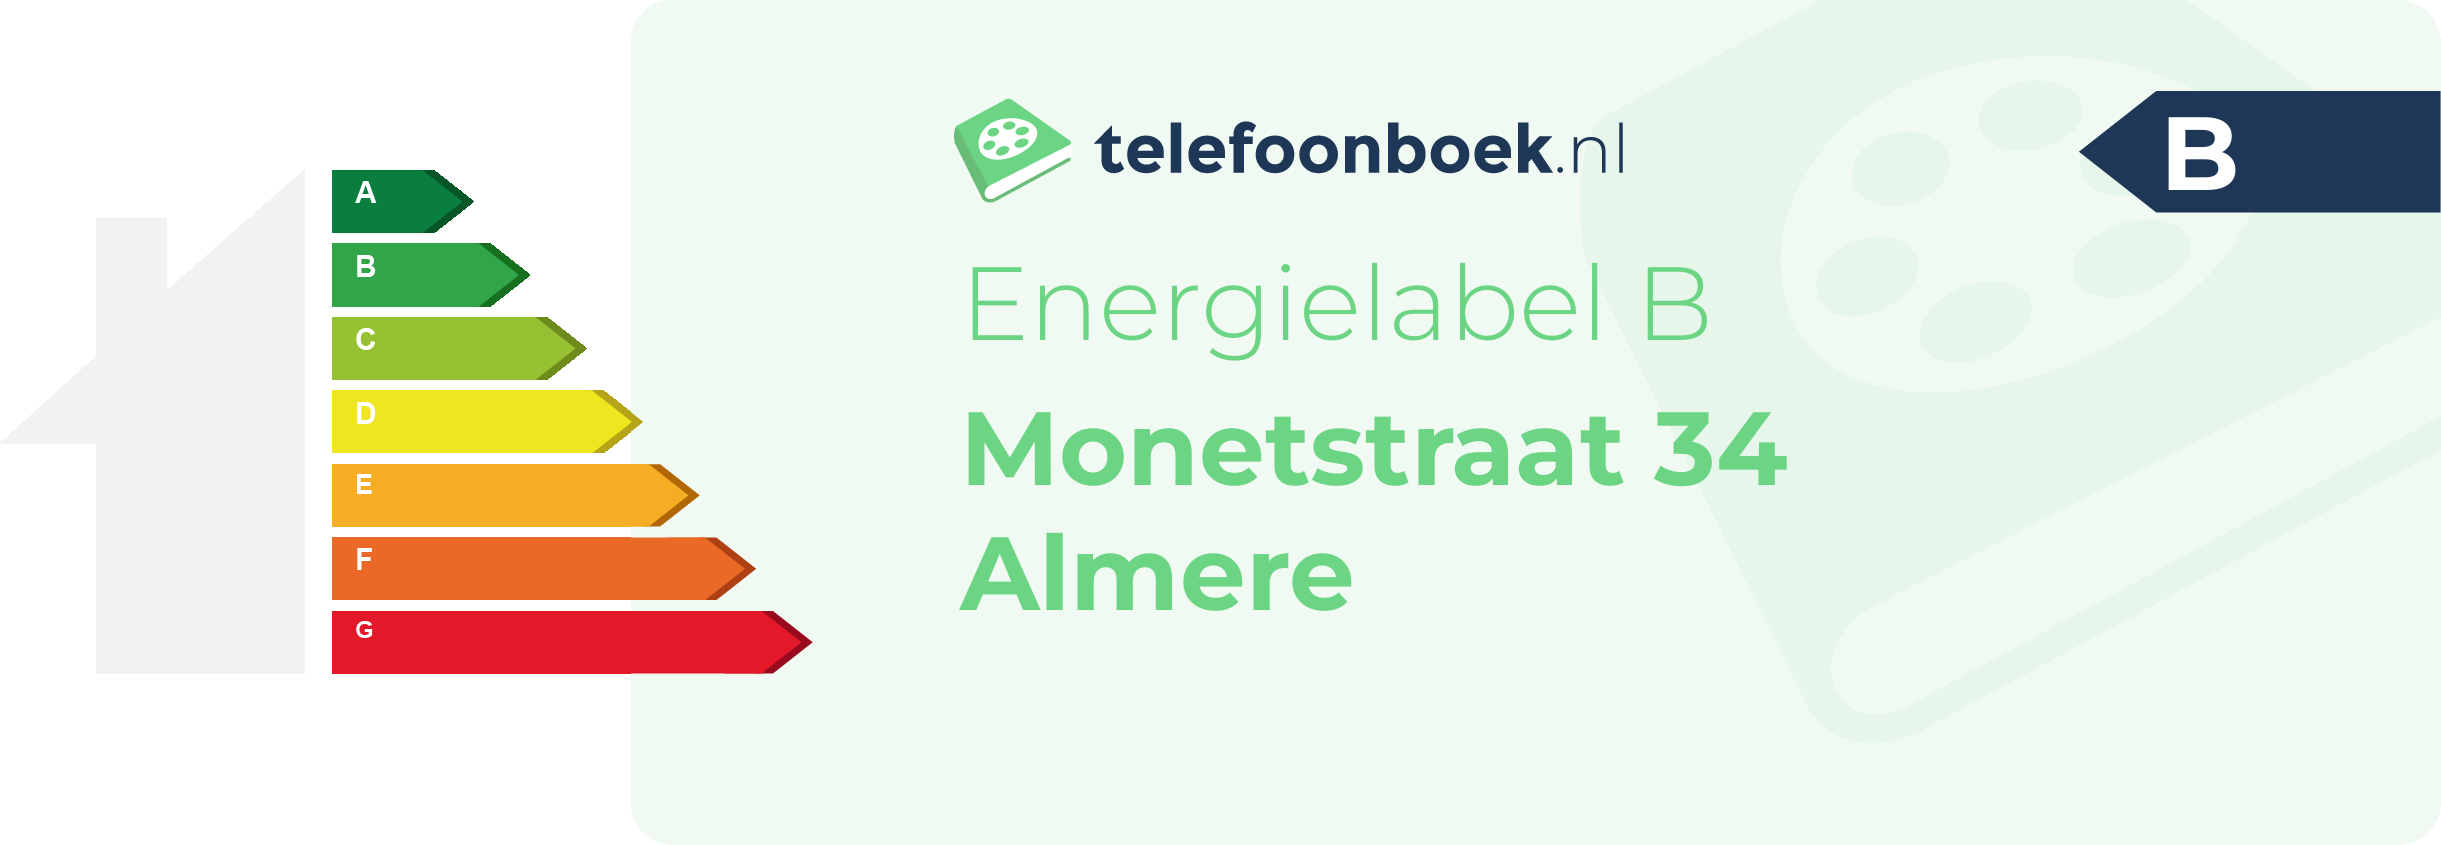 Energielabel Monetstraat 34 Almere